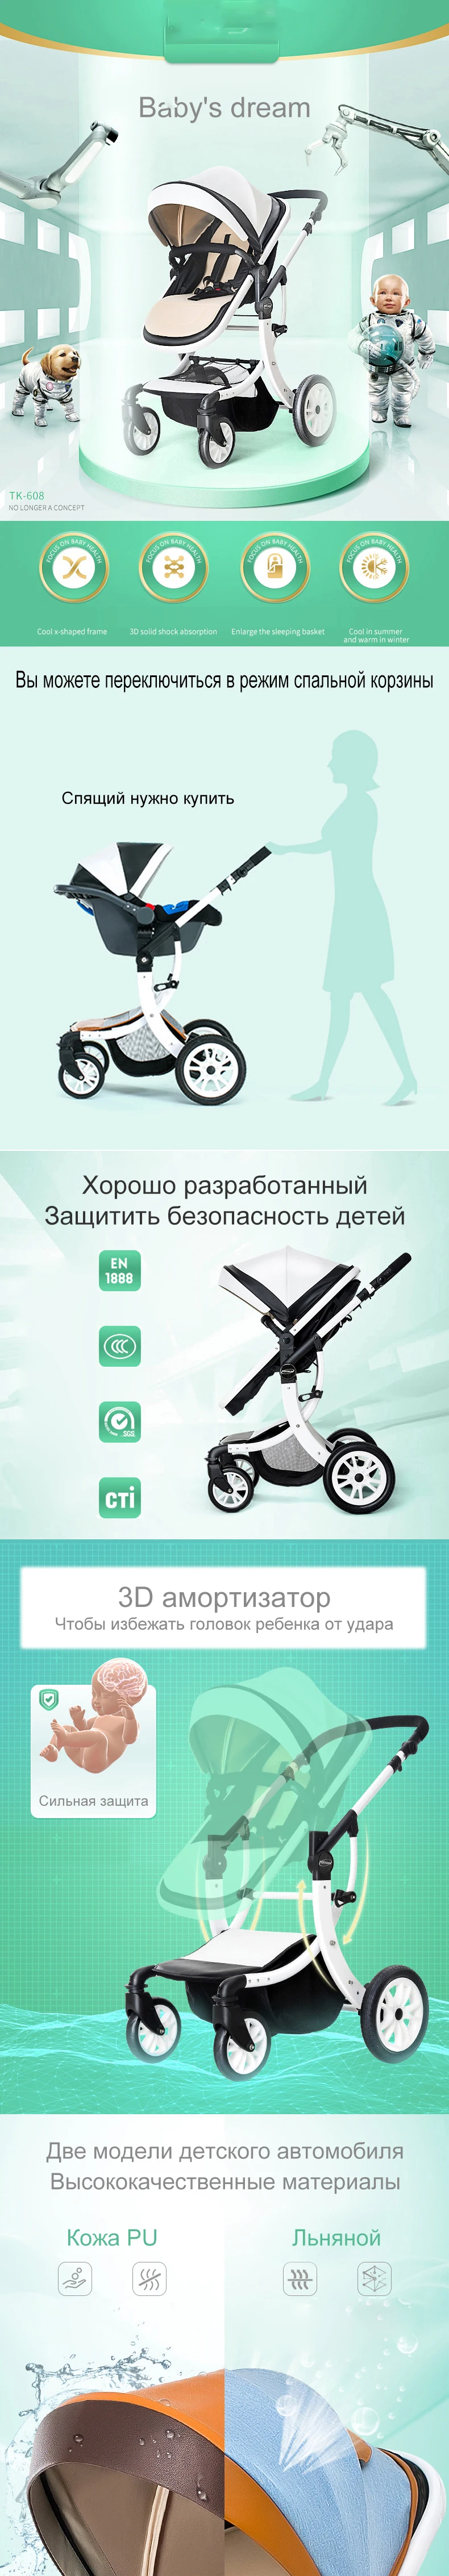 Детская коляска 2 в 1 с автокреслом высокий Landscope складная детская коляска для детей от 0 до 3 лет Детские коляски для новорожденных